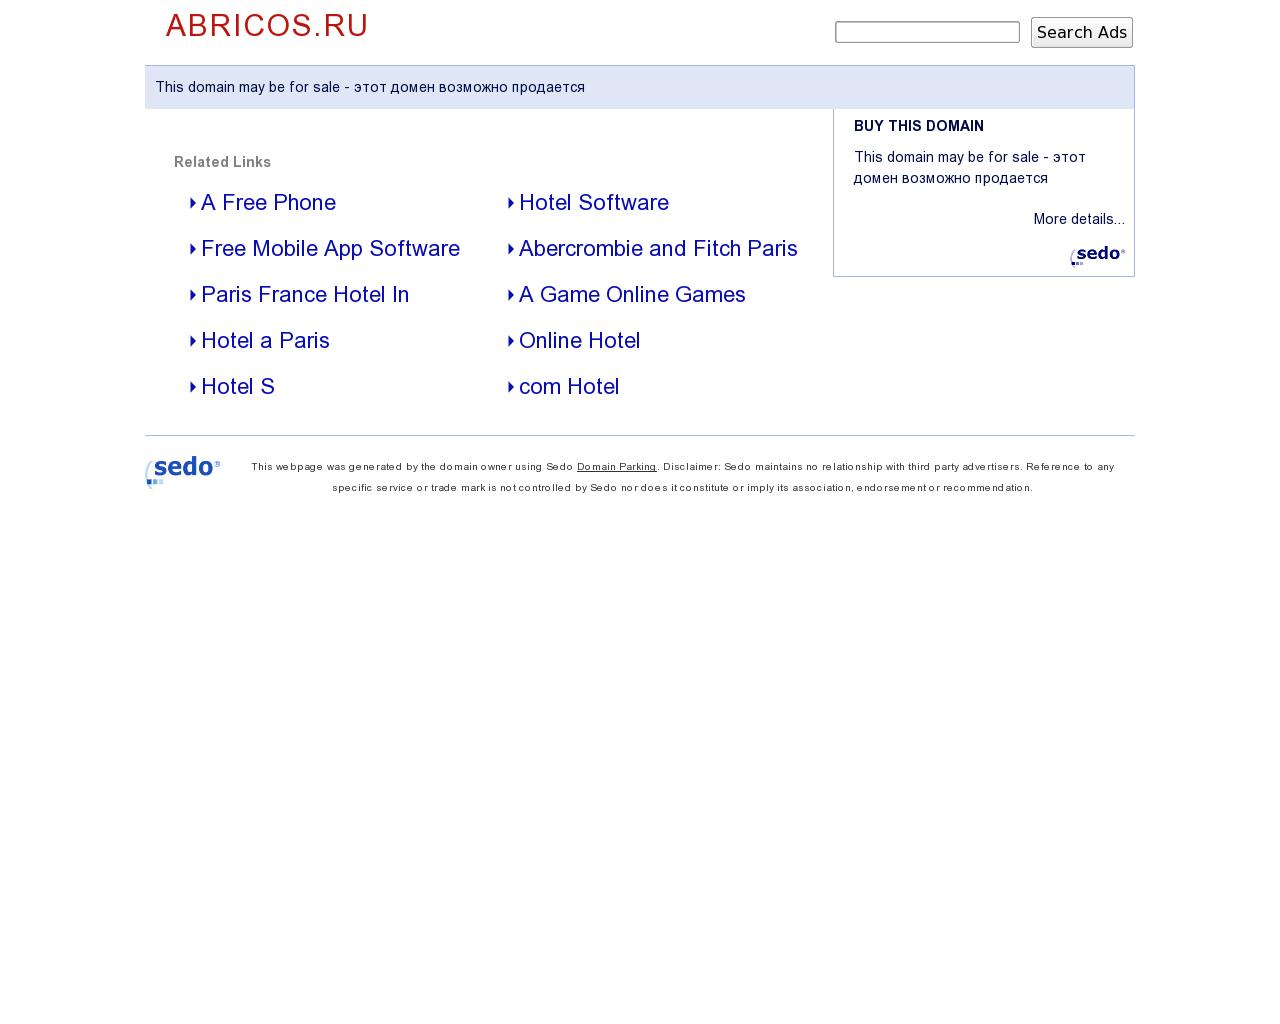 Изображение сайта abricos.ru в разрешении 1280x1024